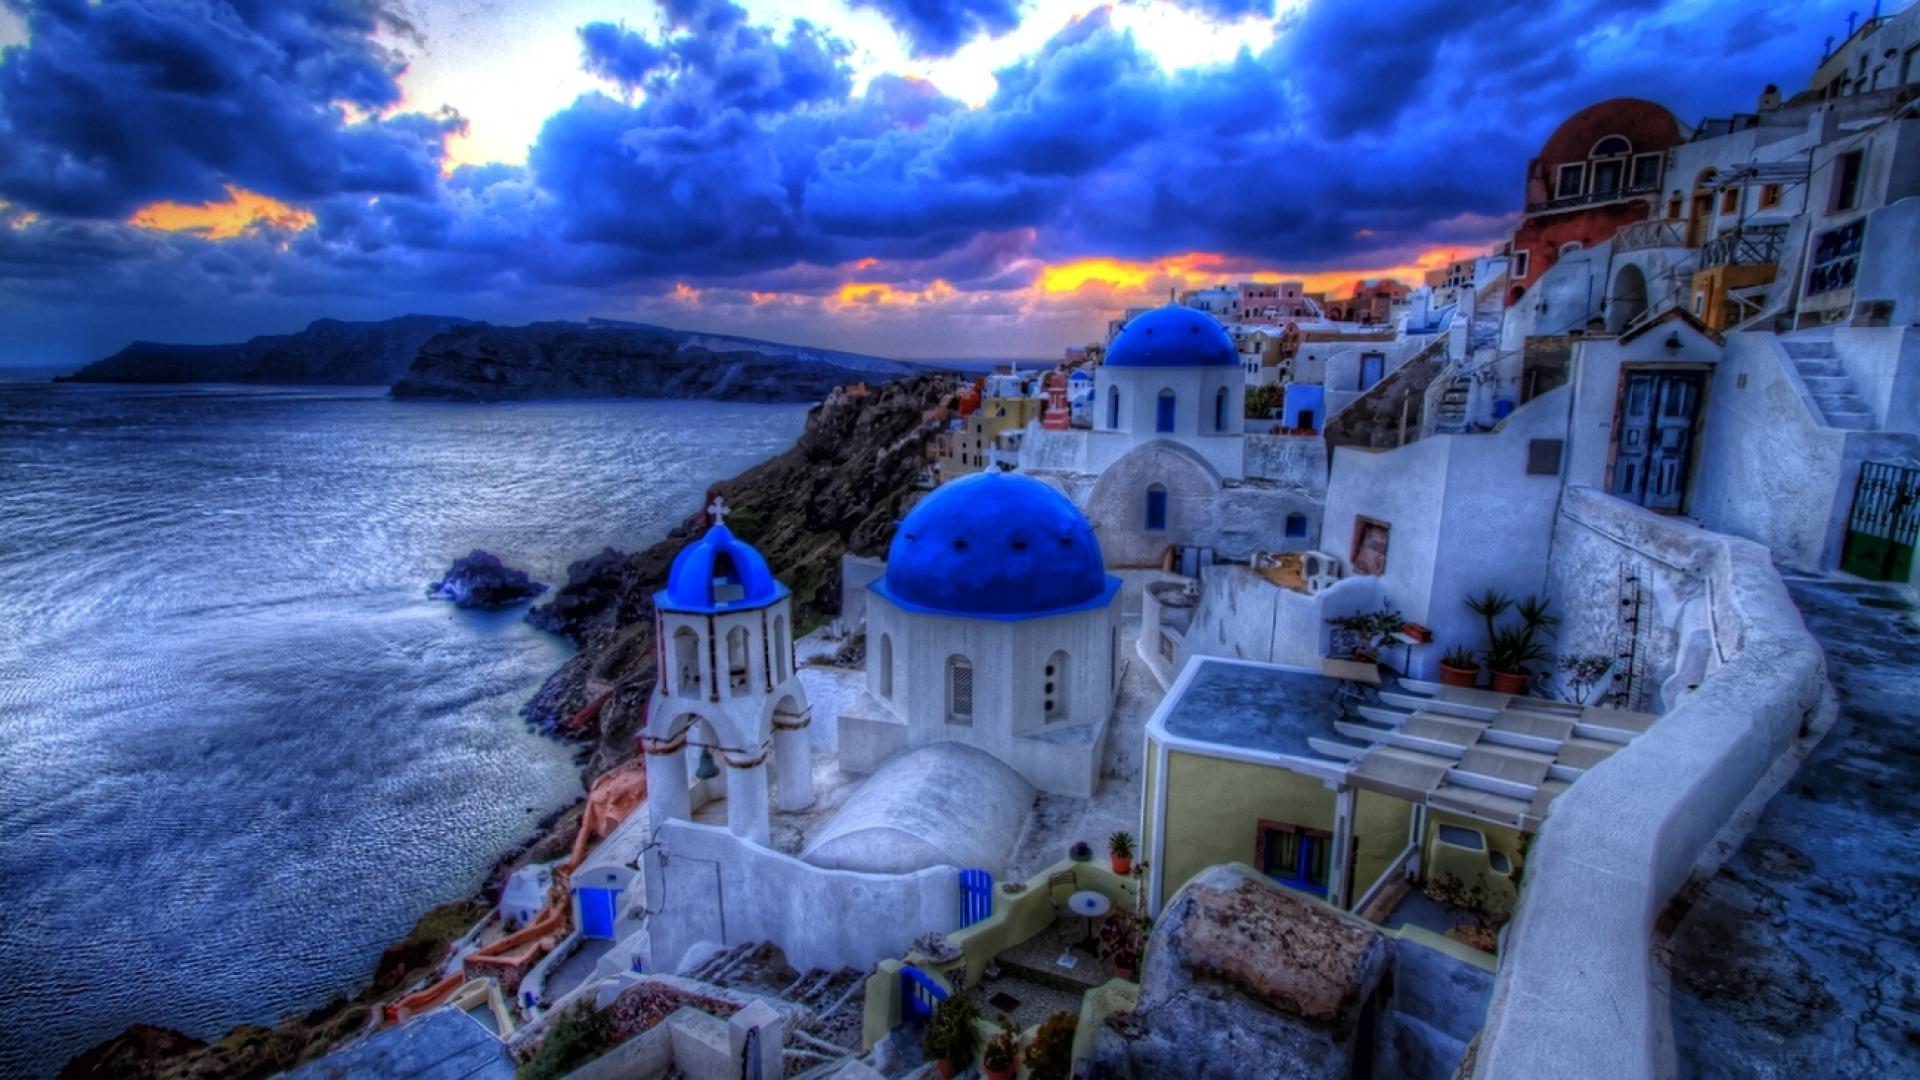 Hãy tận hưởng vẻ đẹp tuyệt vời của Hy Lạp với bức hình nền máy tính này. Với hình ảnh không thể đẹp hơn về một trong những điểm đến du lịch nổi tiếng của châu Âu, bạn sẽ cảm thấy ngỡ ngàng trước vẻ đẹp hùng vĩ của đất nước này.